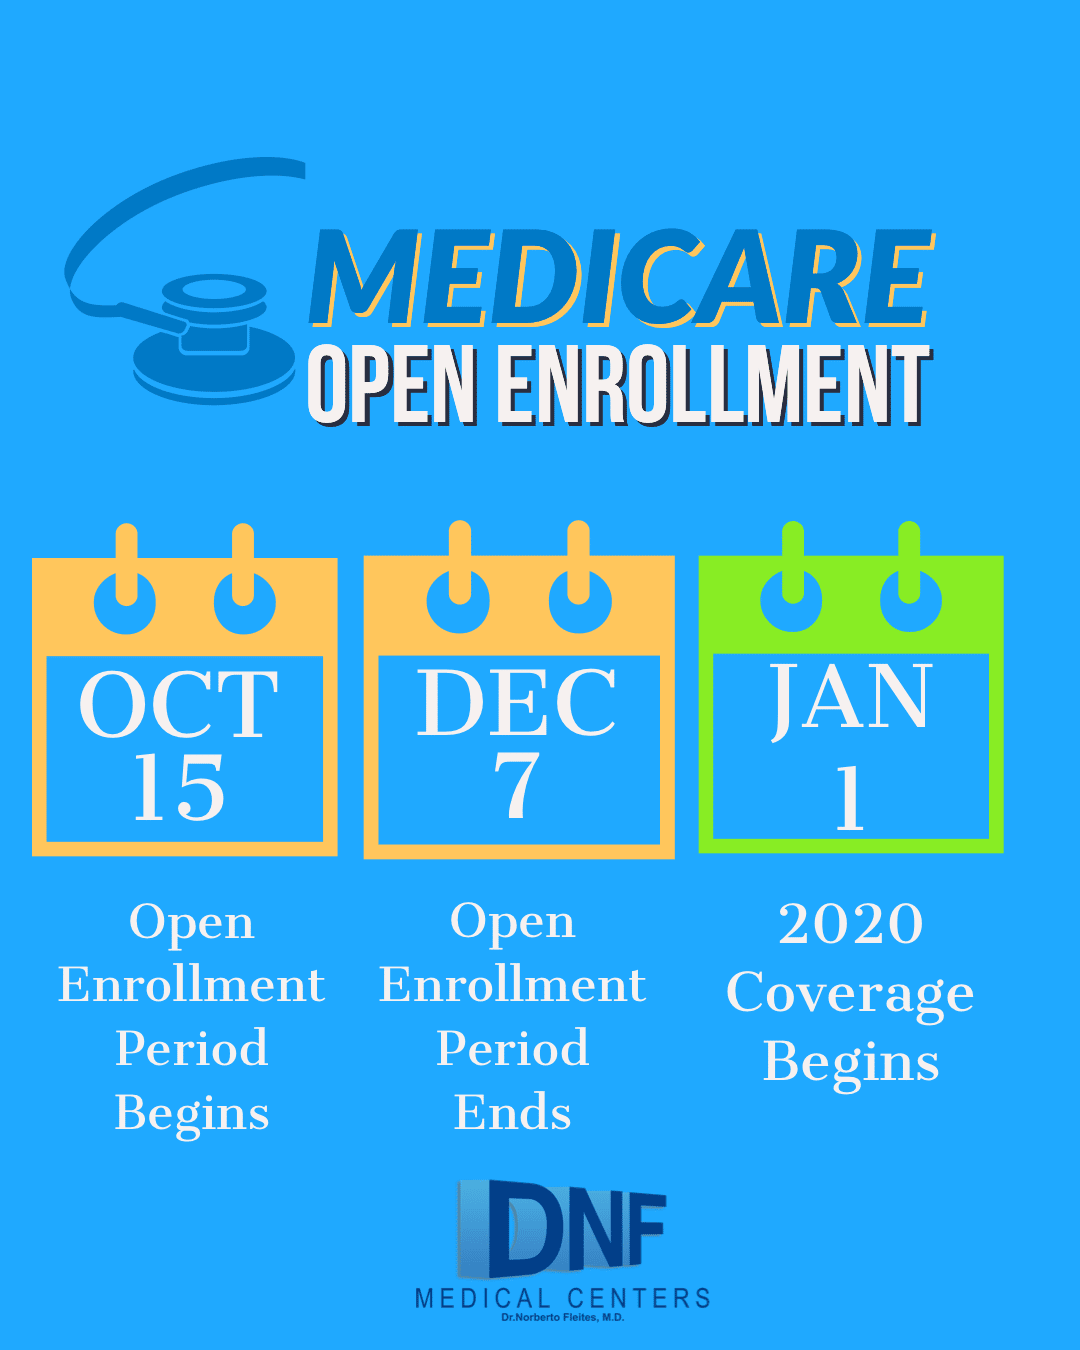 Letâs talk about Medicare Open Enrollment